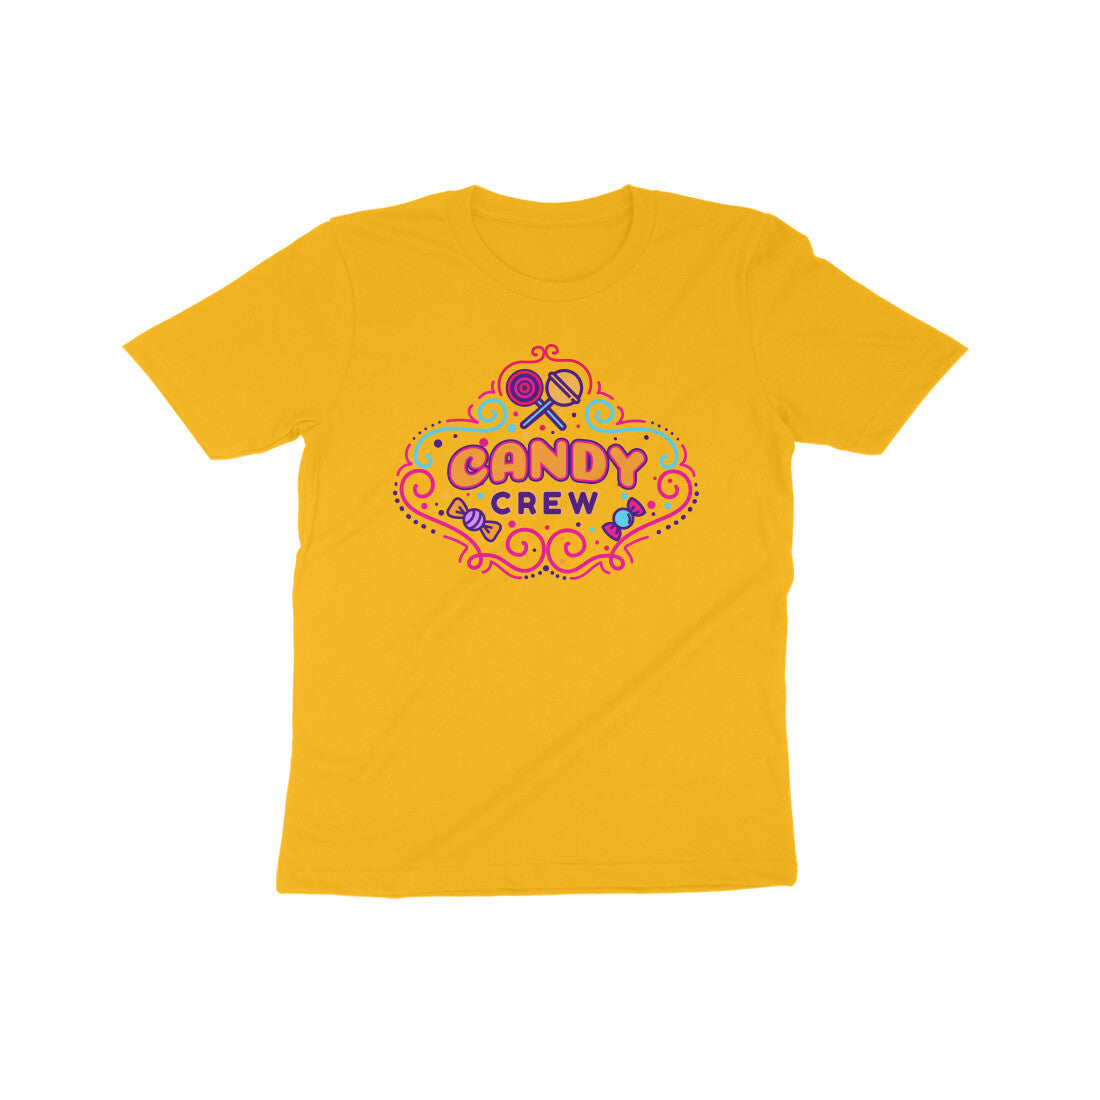 Candy Crew Kids T-Shirt